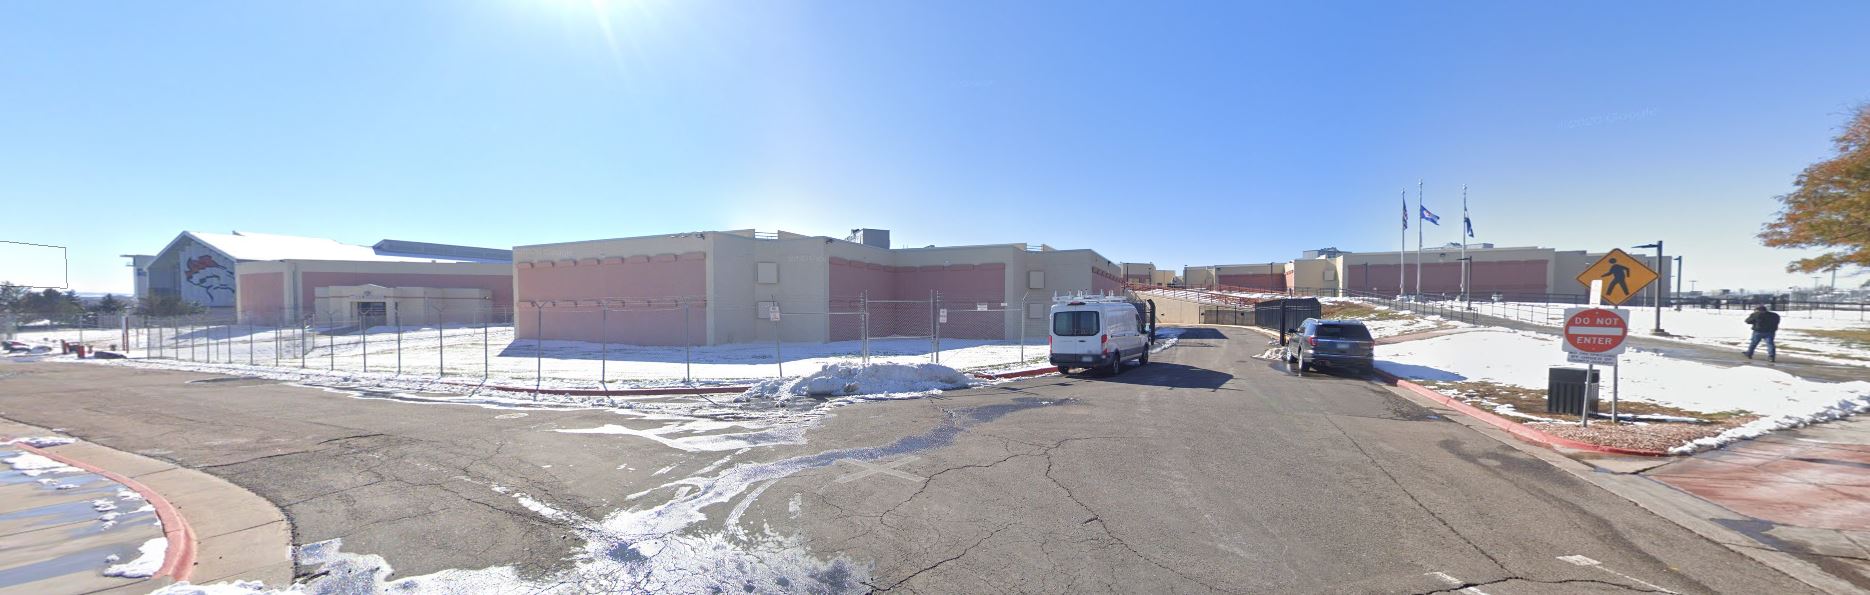 Photos Arapahoe County Detention Facility 2